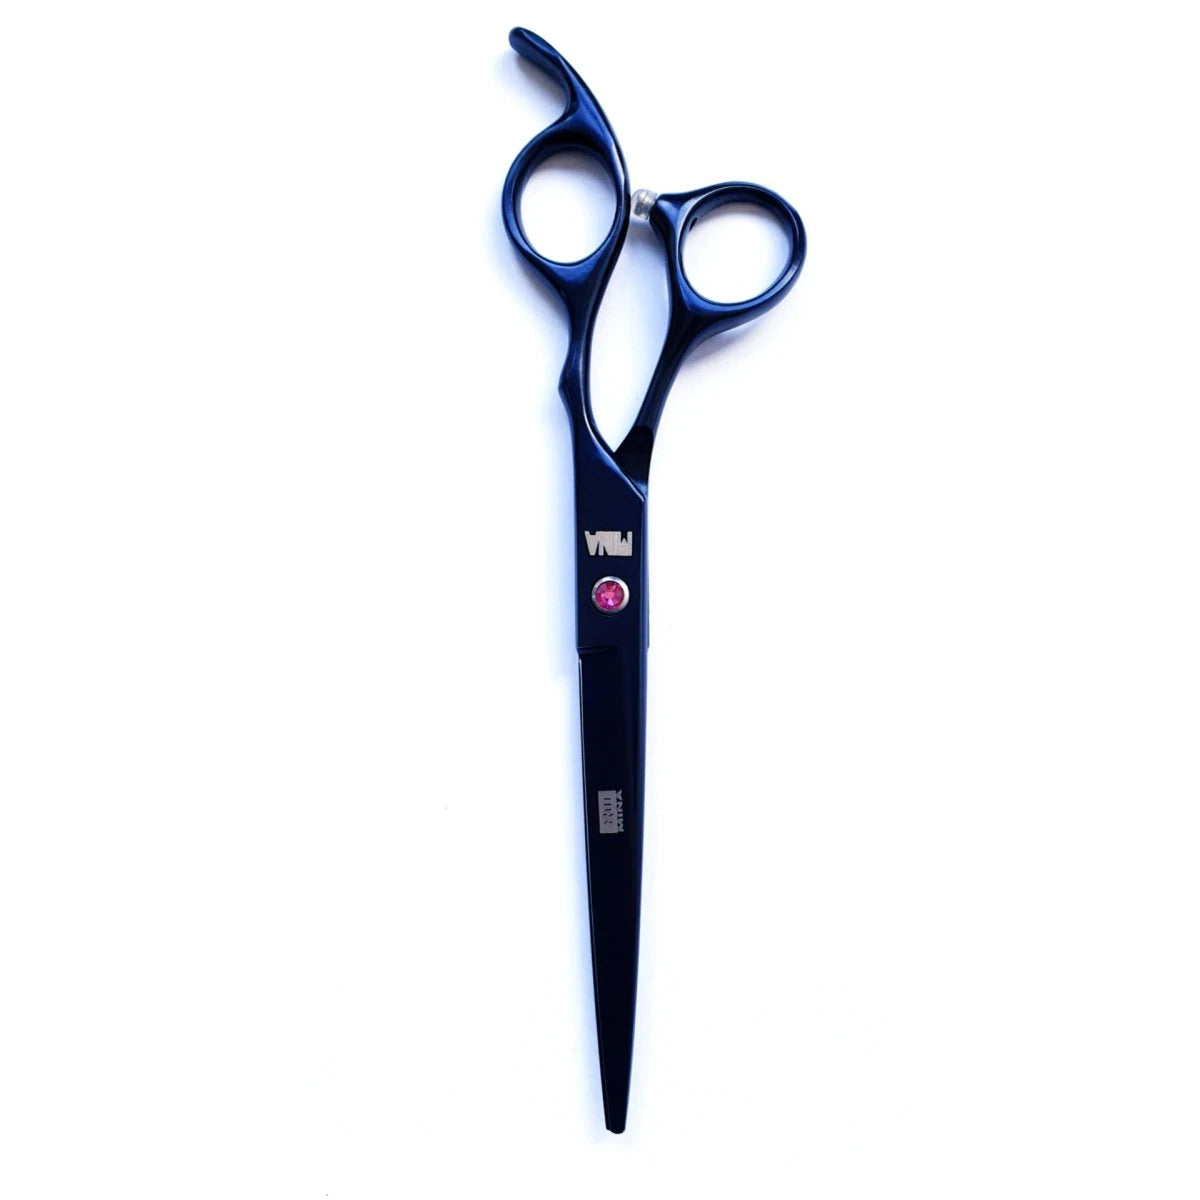 Mina Barber shear is the best beginner hair scissor